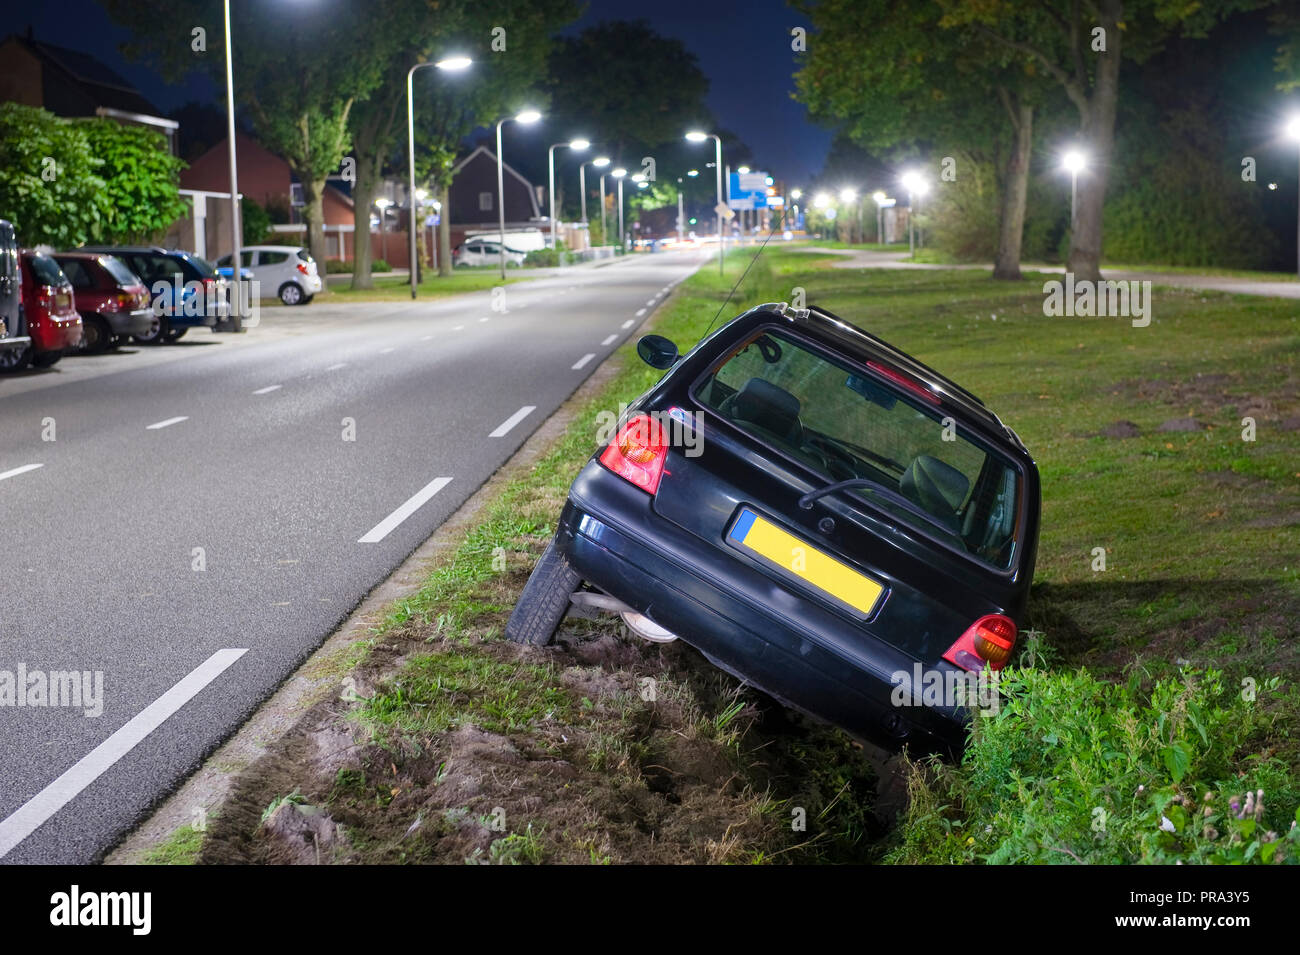 Ein Auto in einen Graben gefahren Stockfotografie - Alamy